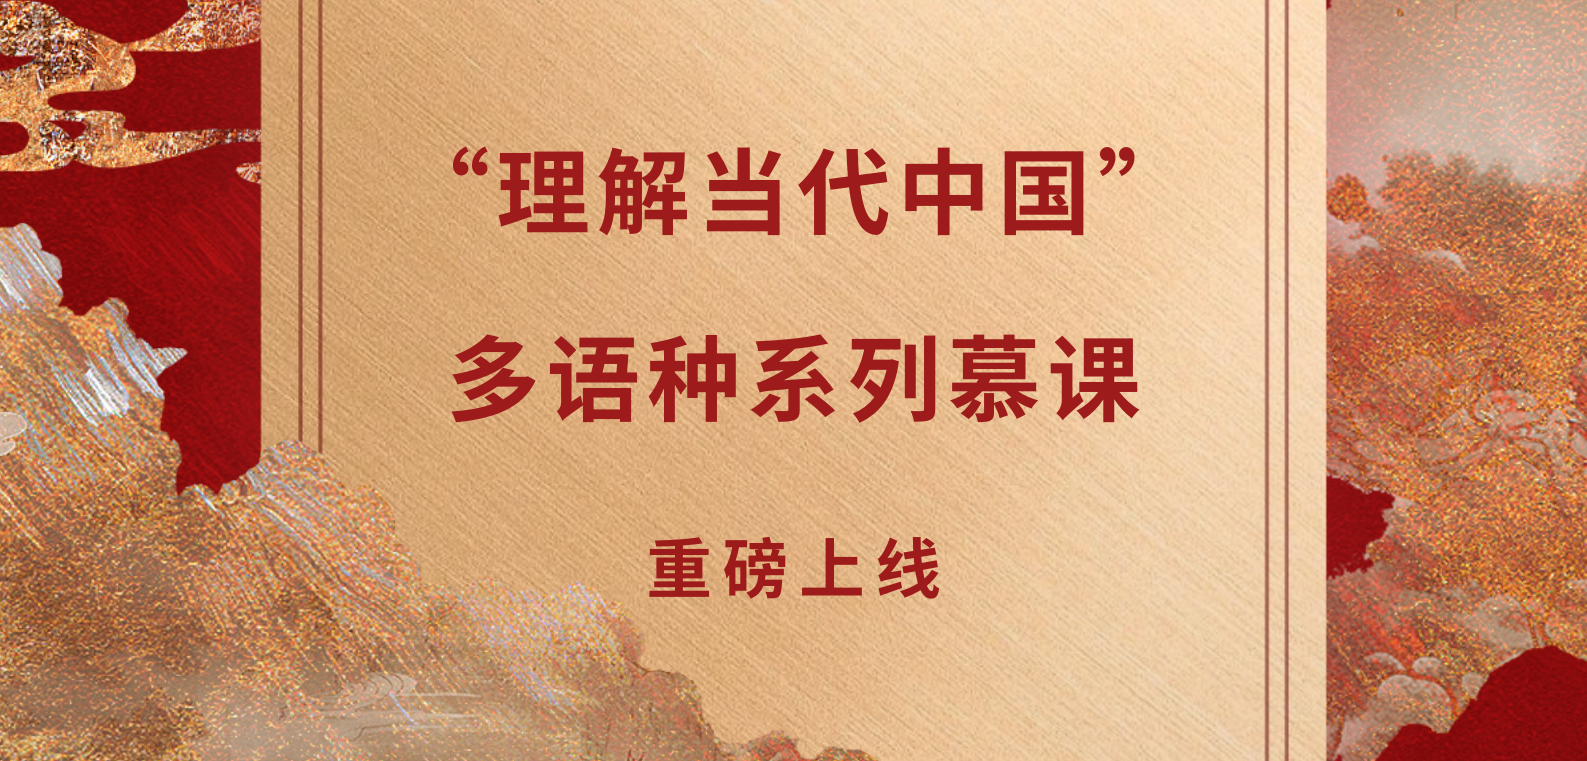 “理解当代中国”多语种系列慕课重磅上线